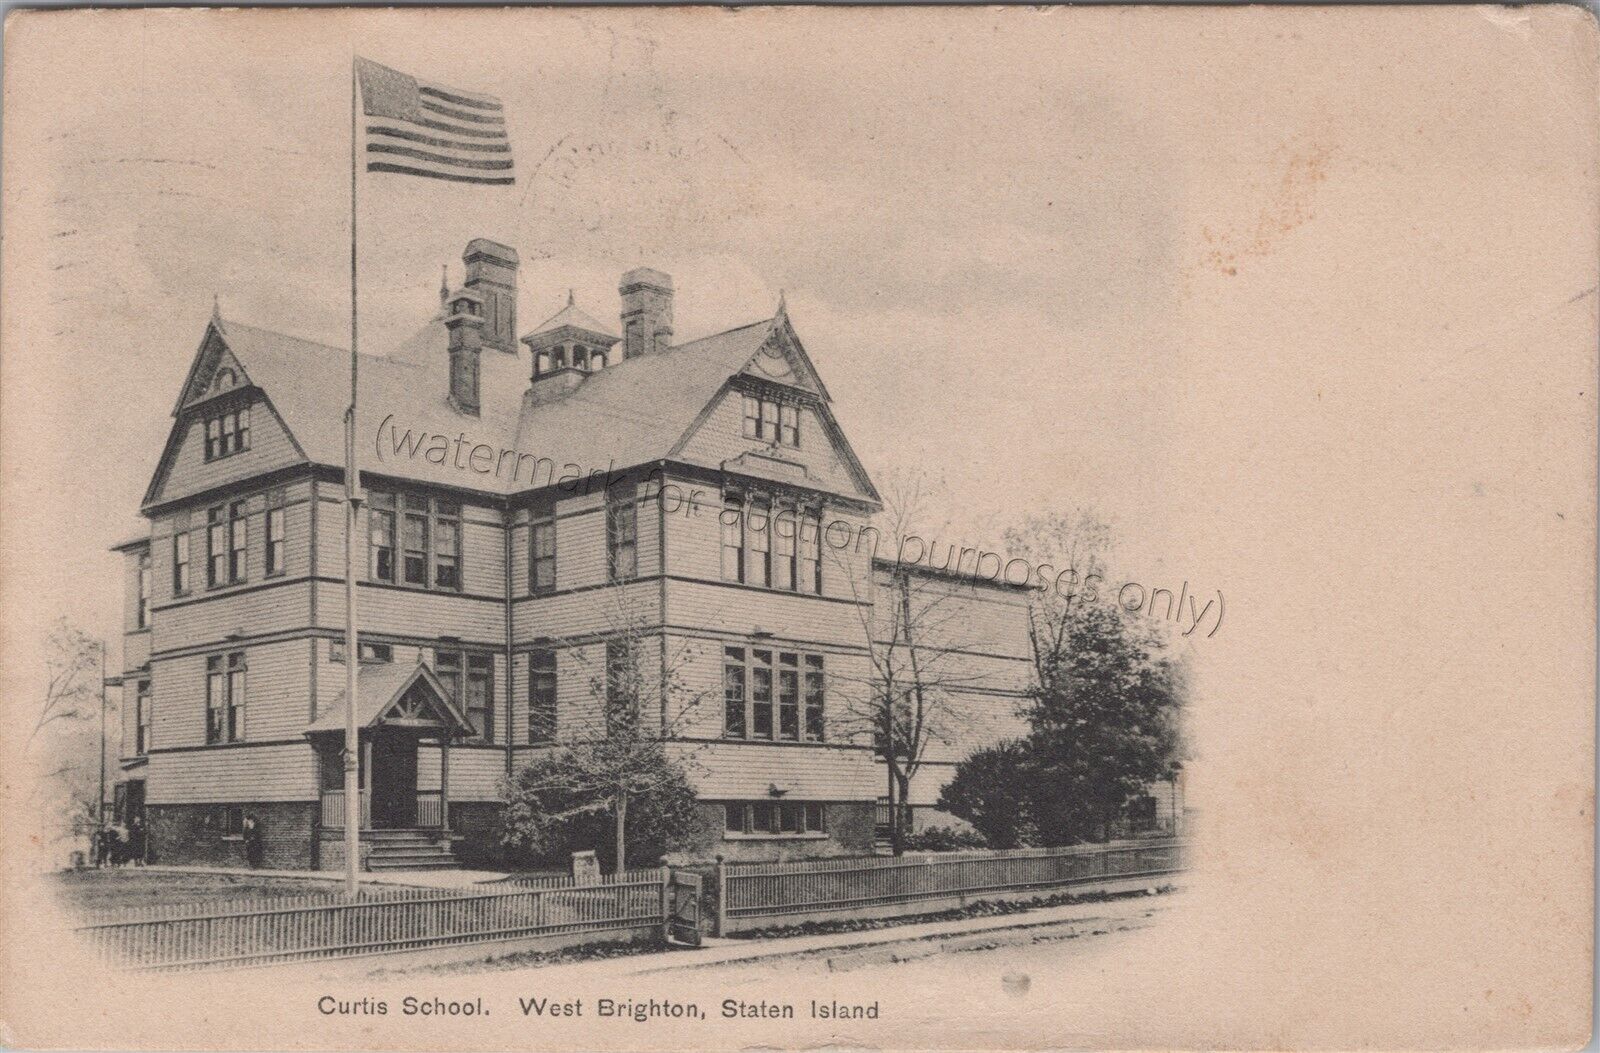 West Brighton, Staten Island, NYC: 1908 Curtis School Vintage New York Postcard